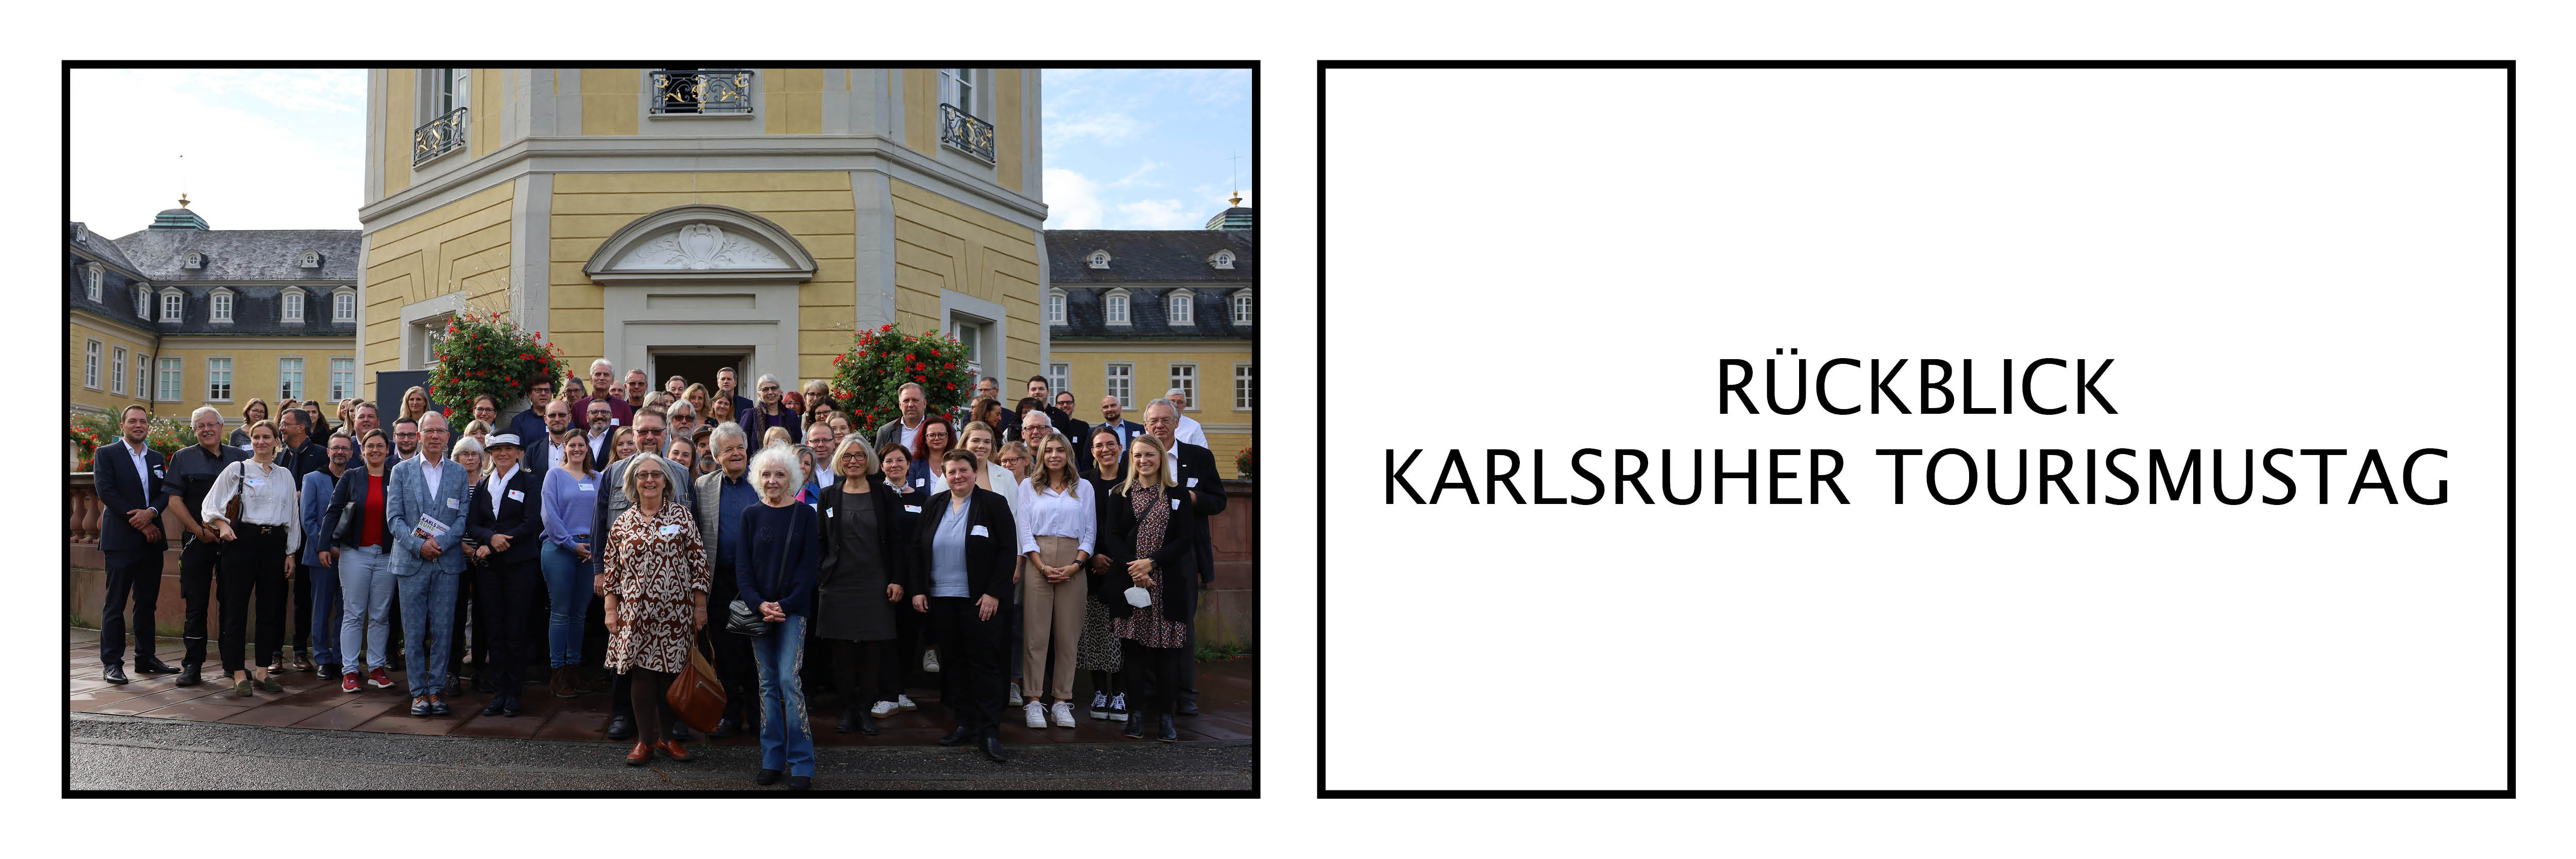 Rückblick Karlsruher Tourismustag